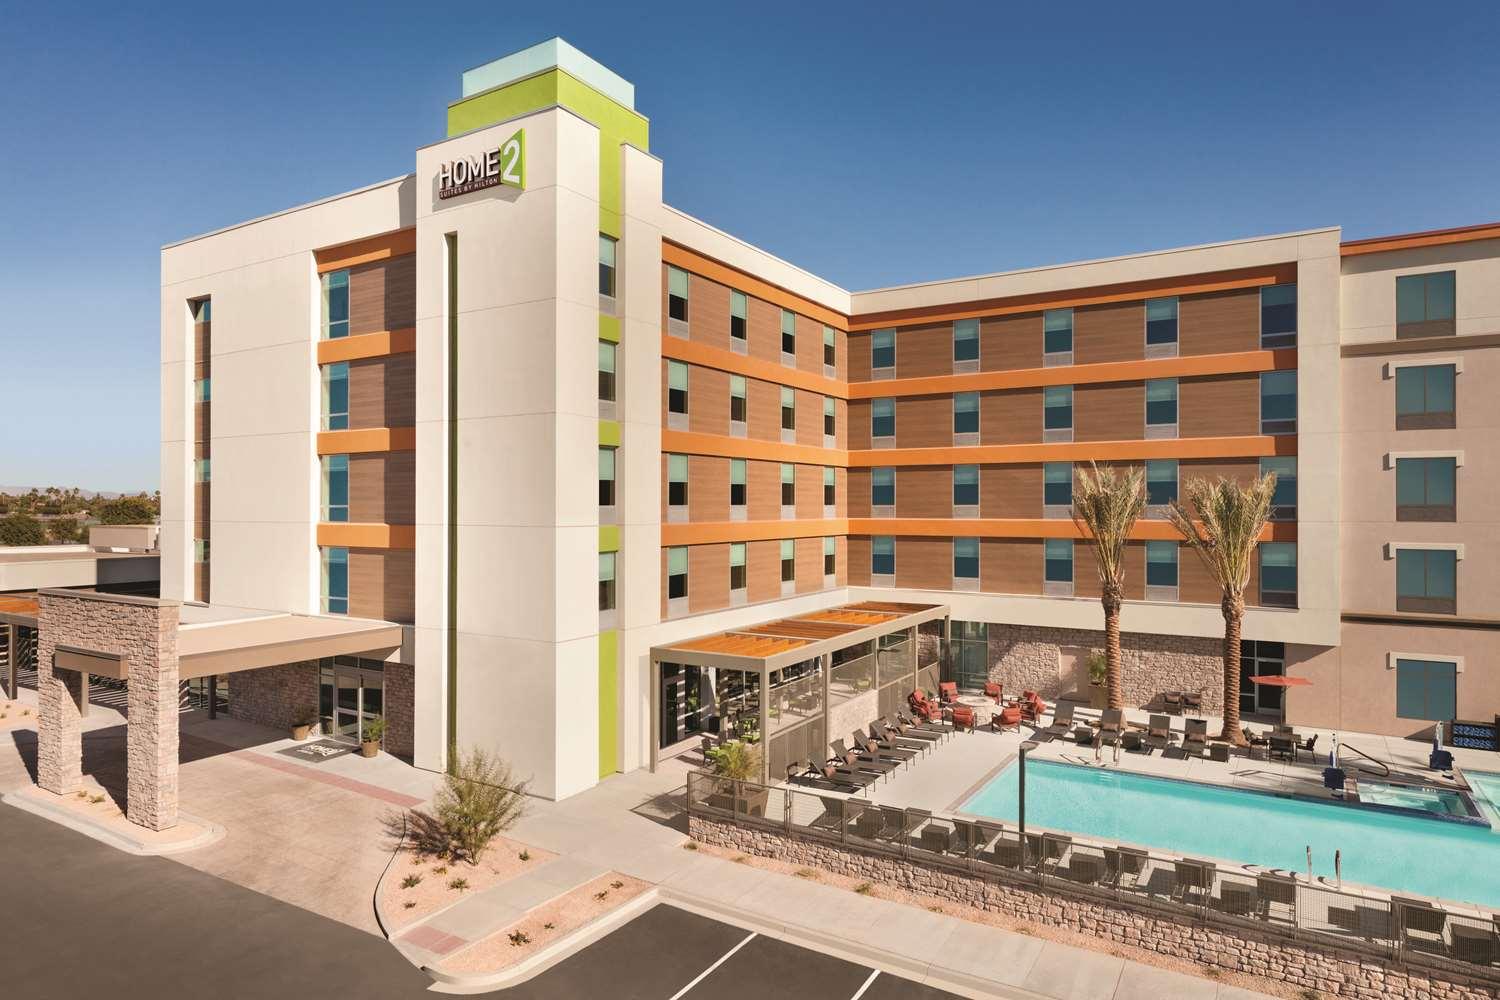 Home2 Suites by Hilton Phoenix Tempe, University Research Park in Tempe, AZ